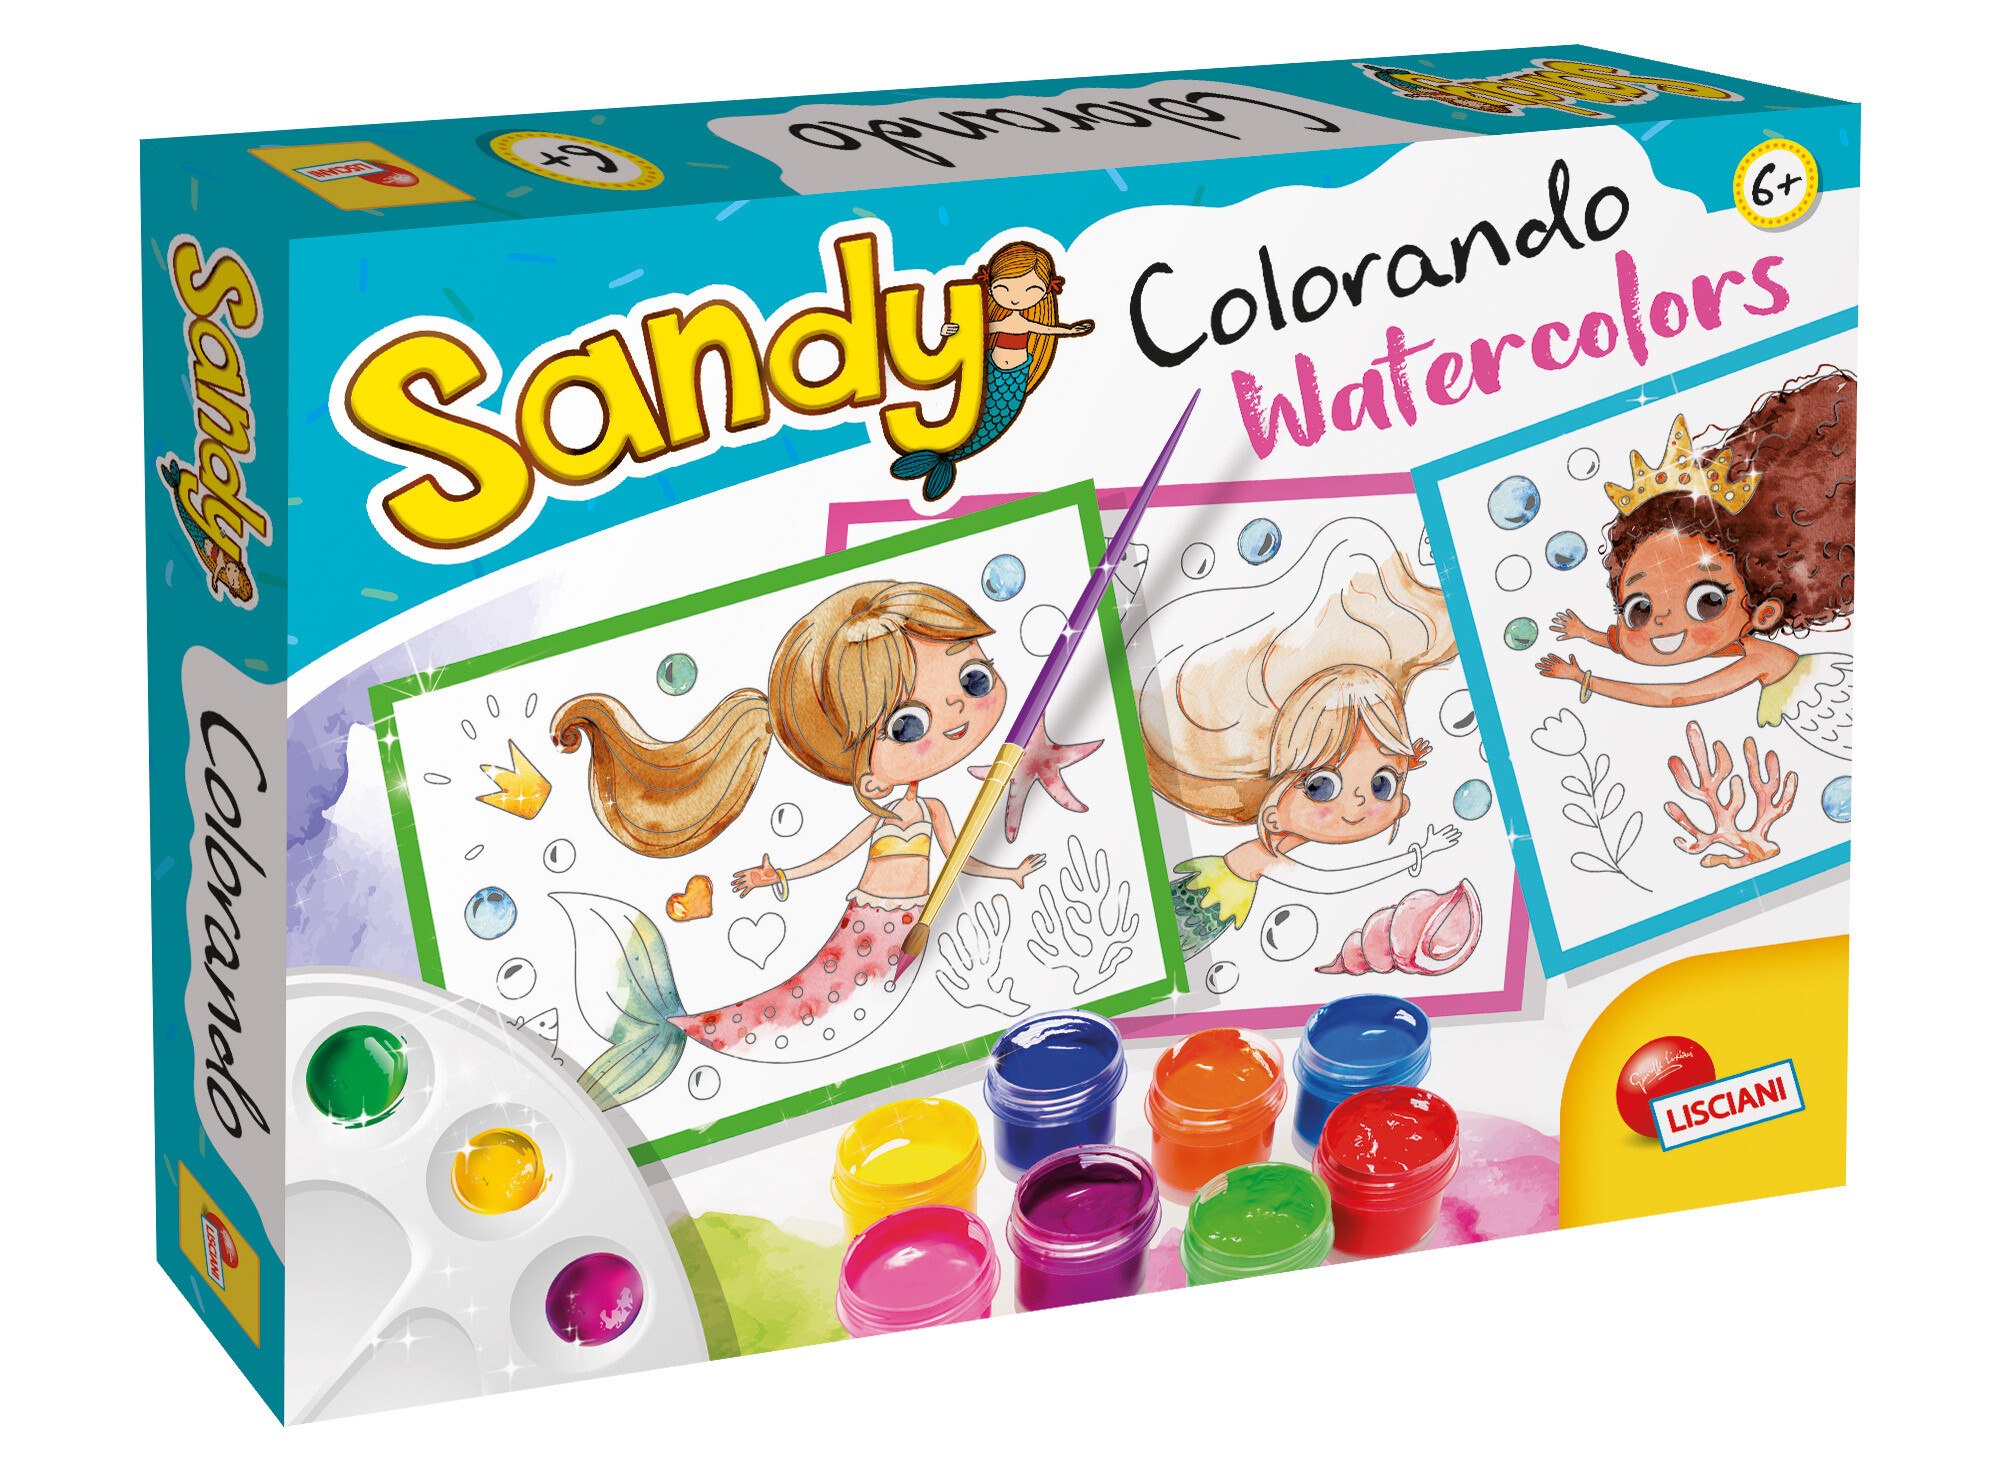 Sandy colorando - watercolors - LISCIANI